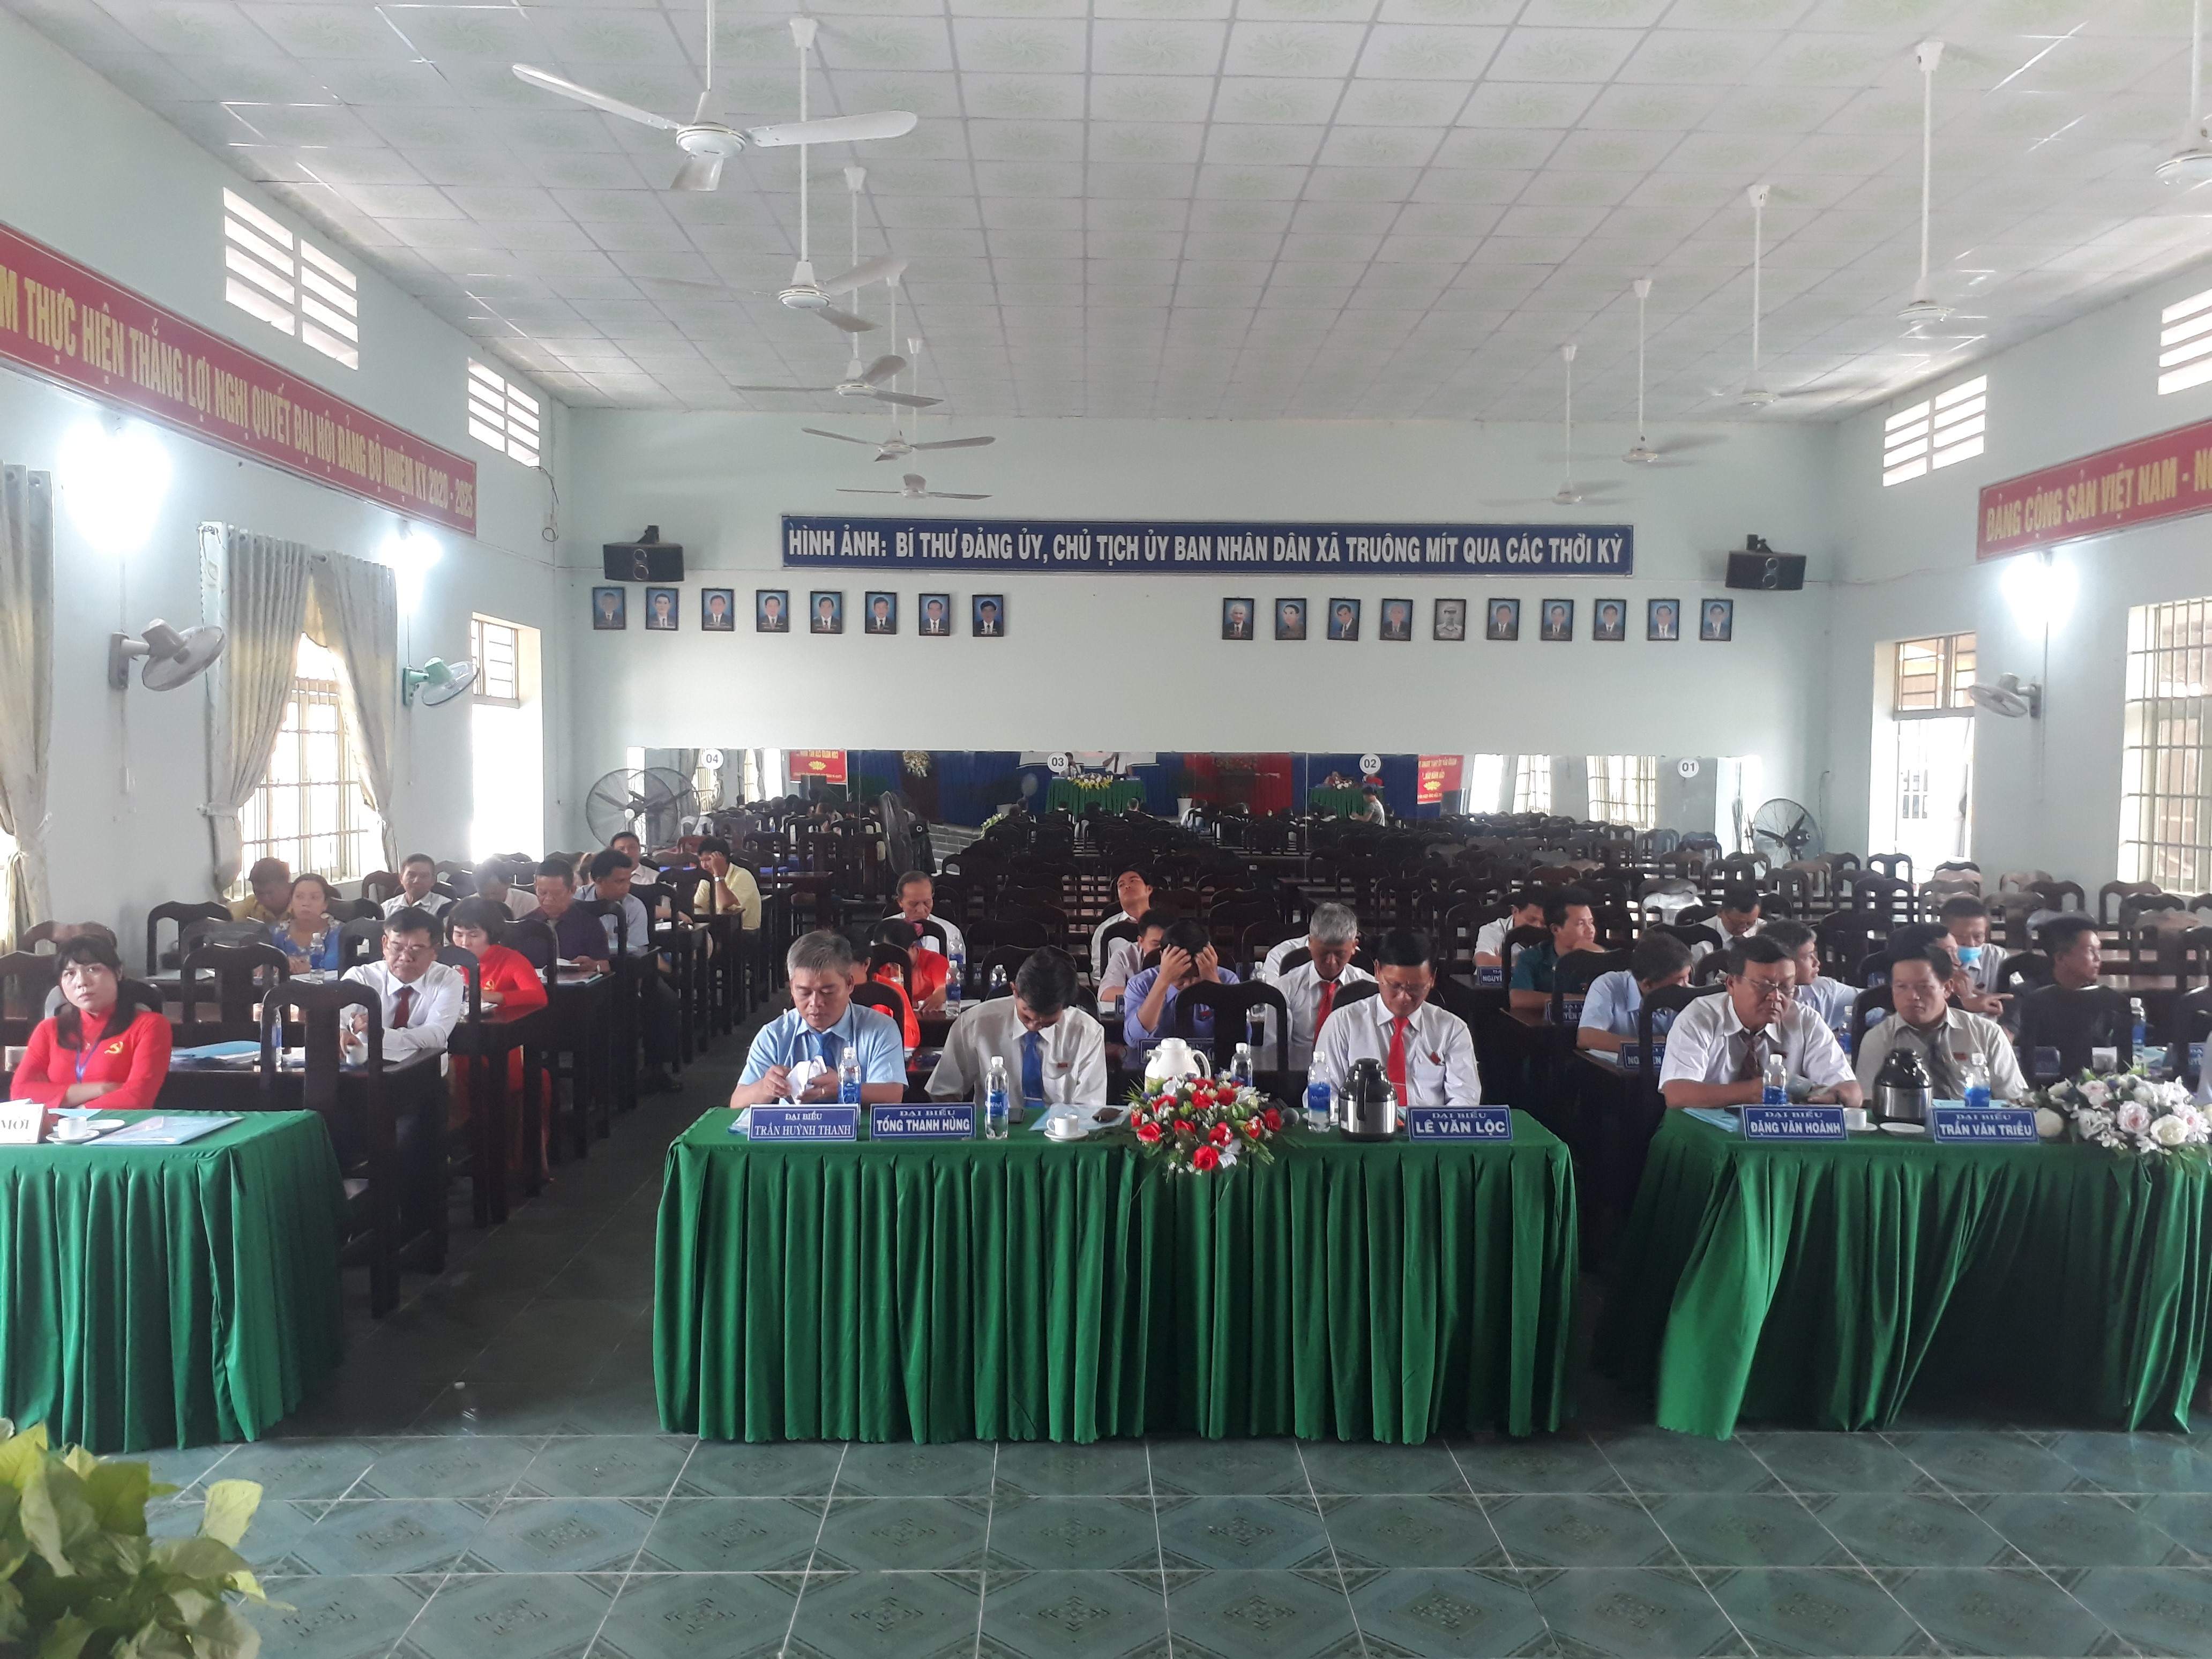 Hội đồng nhân dân xã Truông Mít, huyện Dương Minh Châu: Tổ chức kỳ họp thứ 11 khóa XI nhiệm kỳ 2016-2021